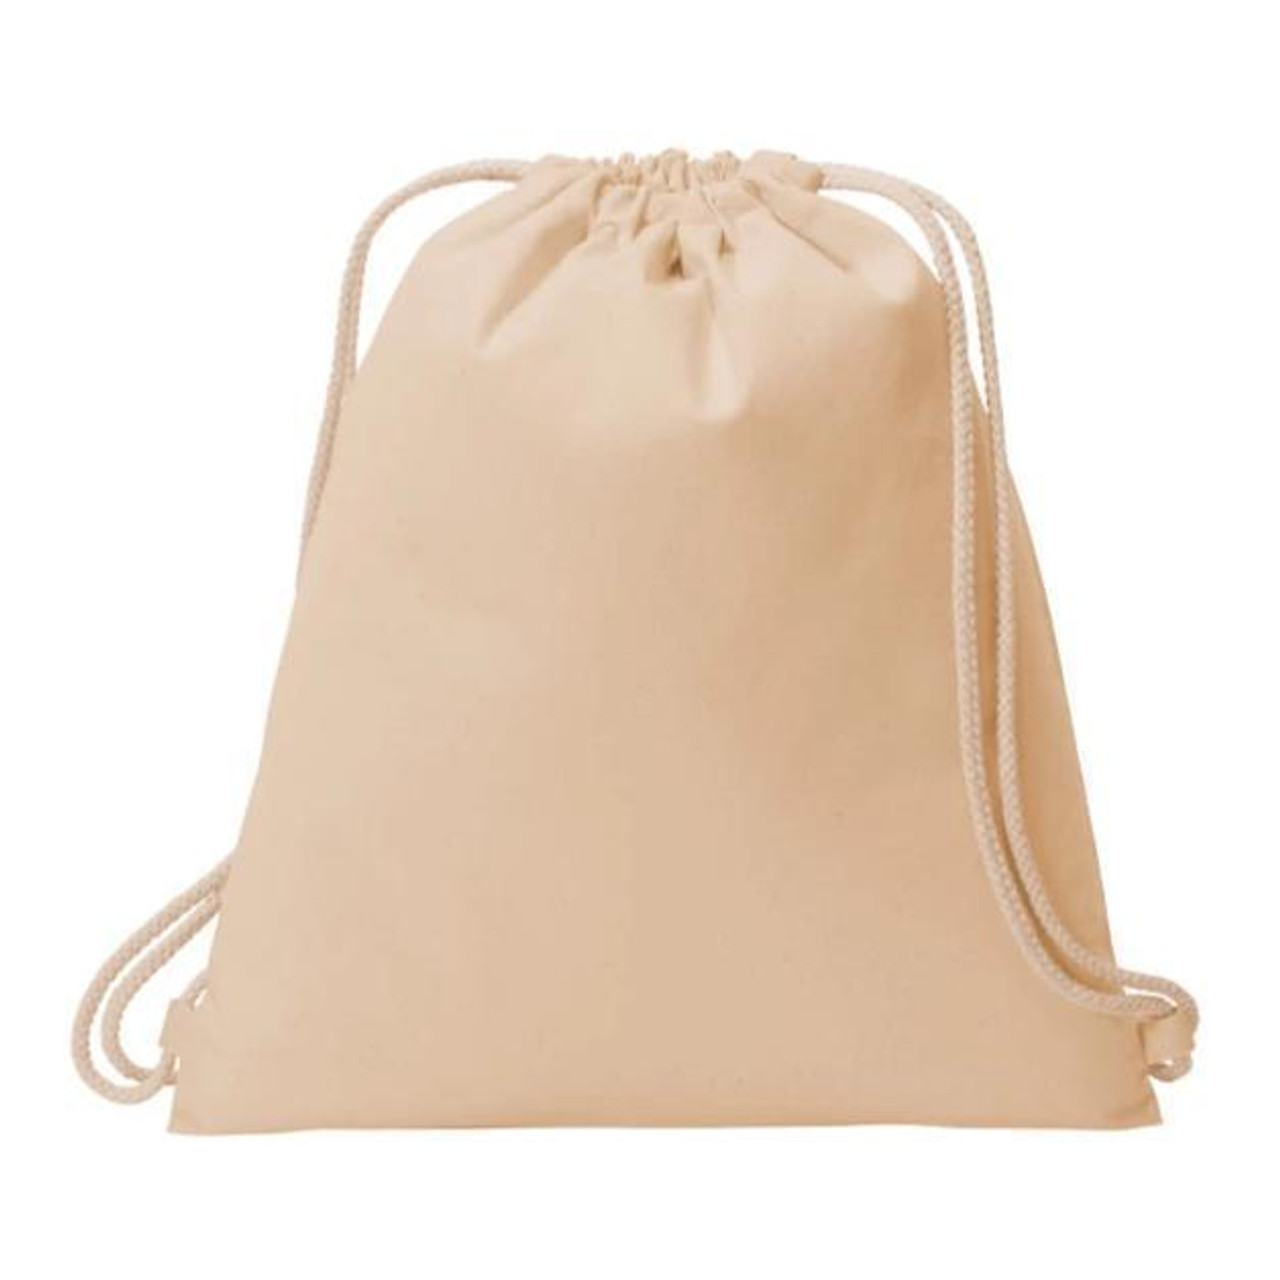 Bulk Cinch Bags - Wholesale Cotton Canvas Drawstring Bags